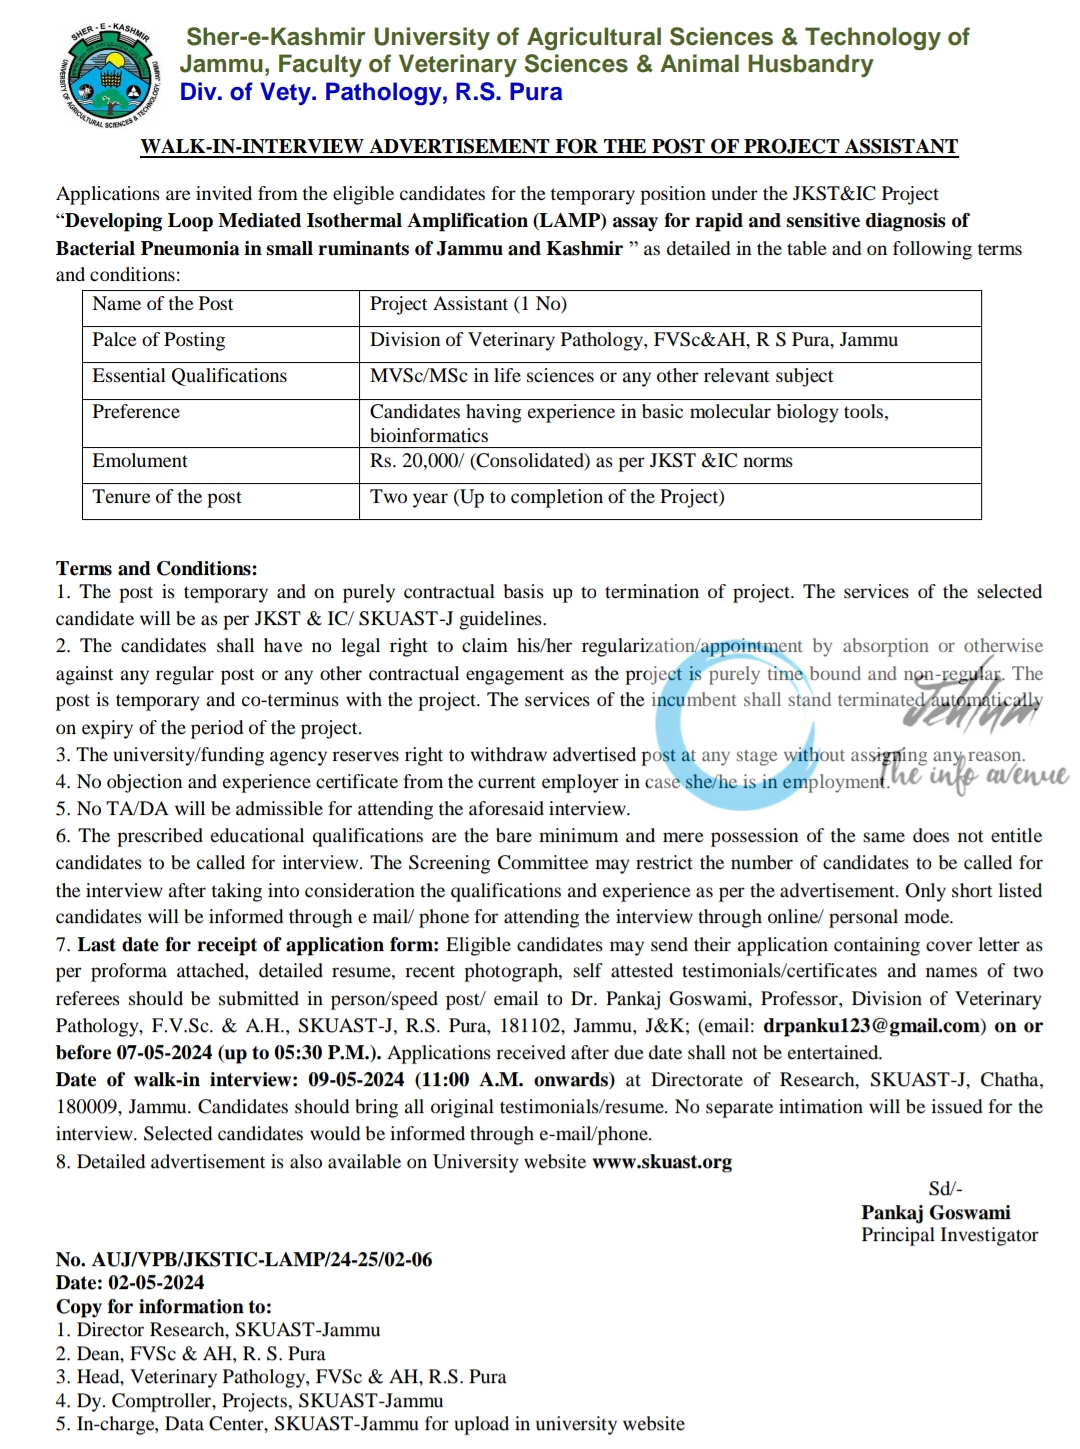 SKUAST Jammu Faculty of Veterinary Sciences Walk-in-Interview Advertisement 2024